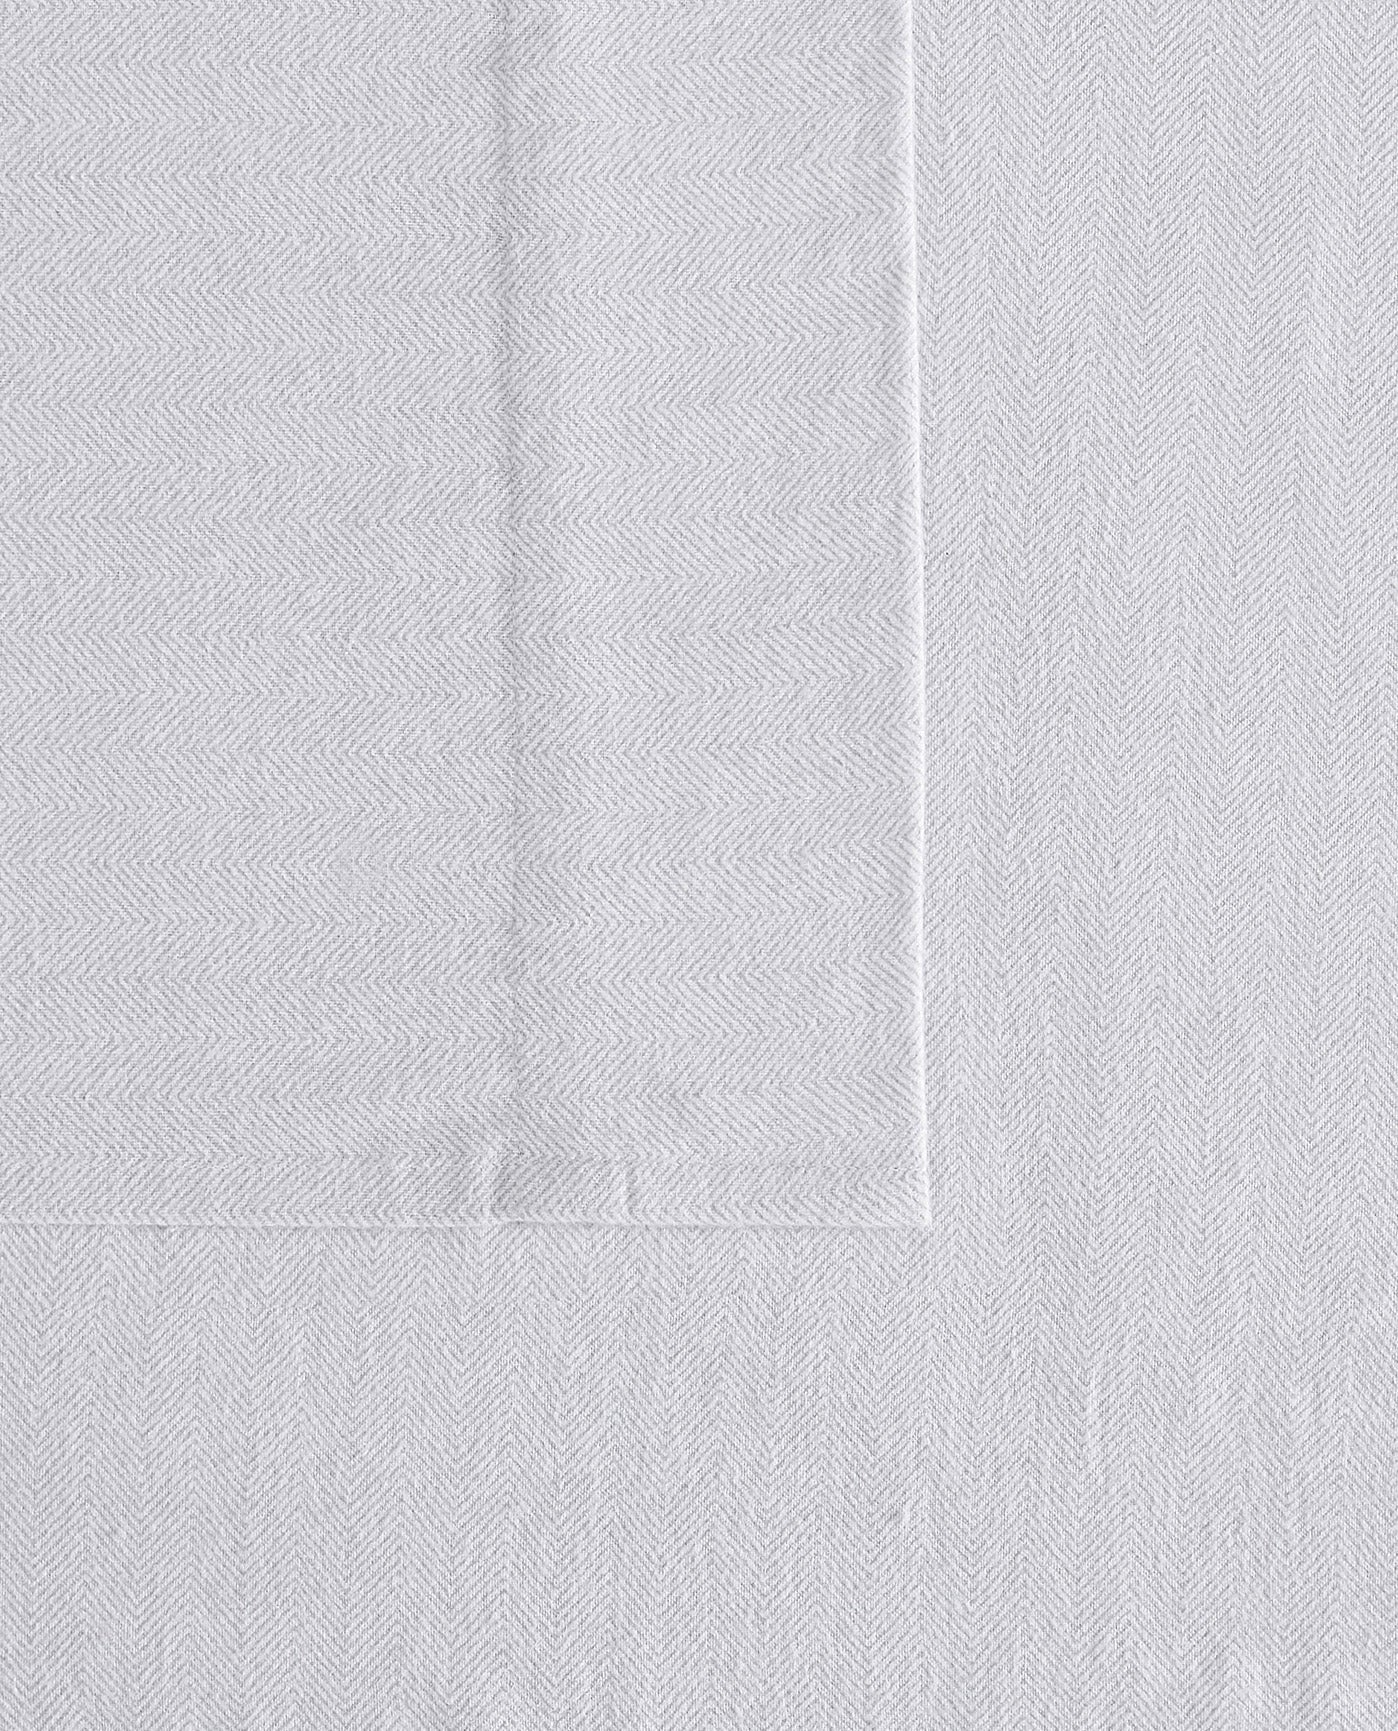 DETAIL VIEW OF HERRINGBONE 3 PIECE FLANNEL DUVET COVER SET | PEM_Grey_Herringbone_090